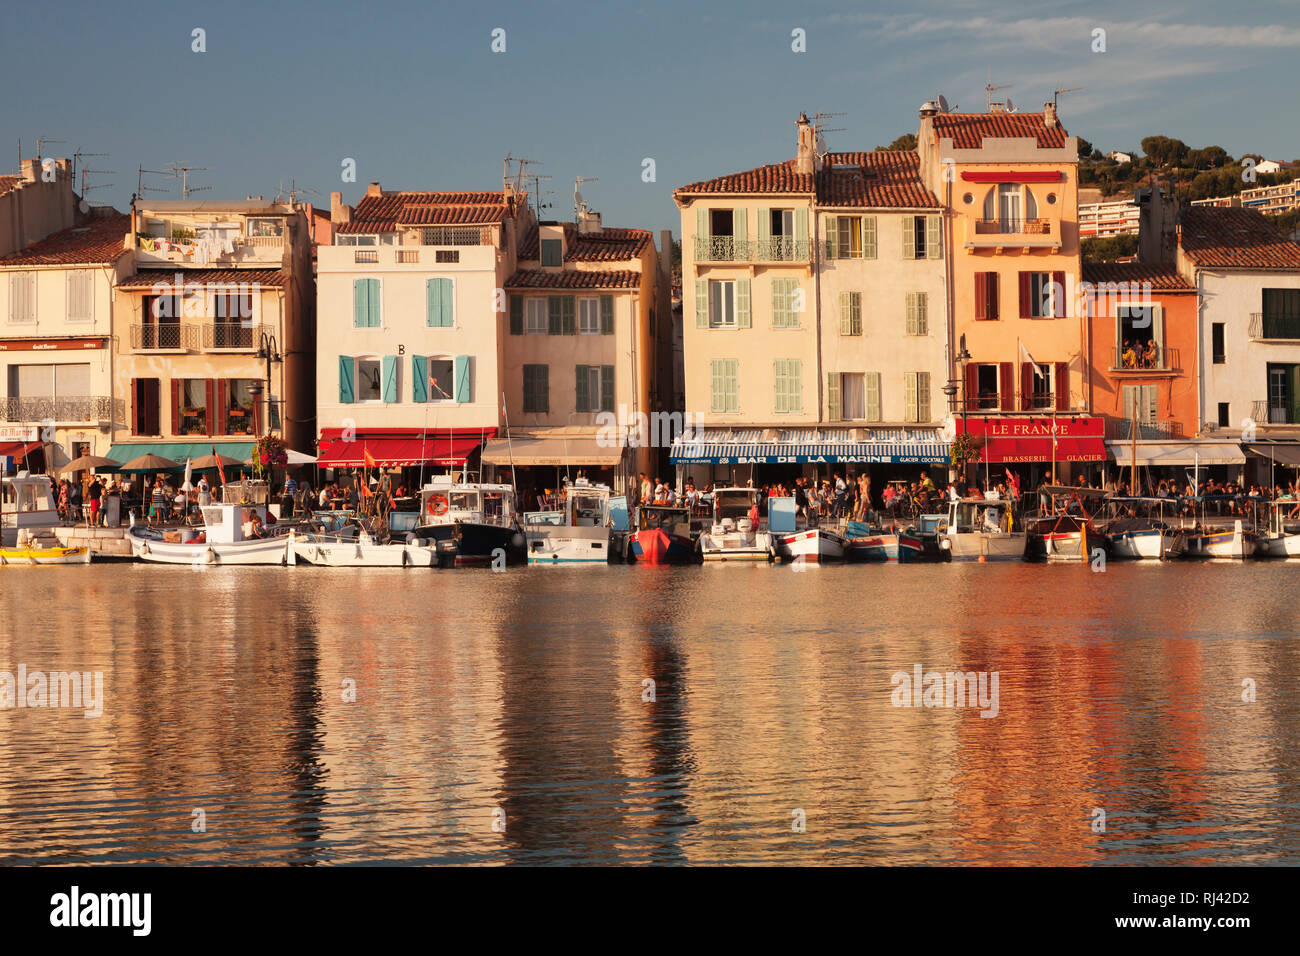 Fischerboote im Hafen, ristoranti an der Hafenpromenade, Cassis, Provenza, Provence-Alpes-Côte d'Azur, Südfrankreich, Frankreich Foto Stock